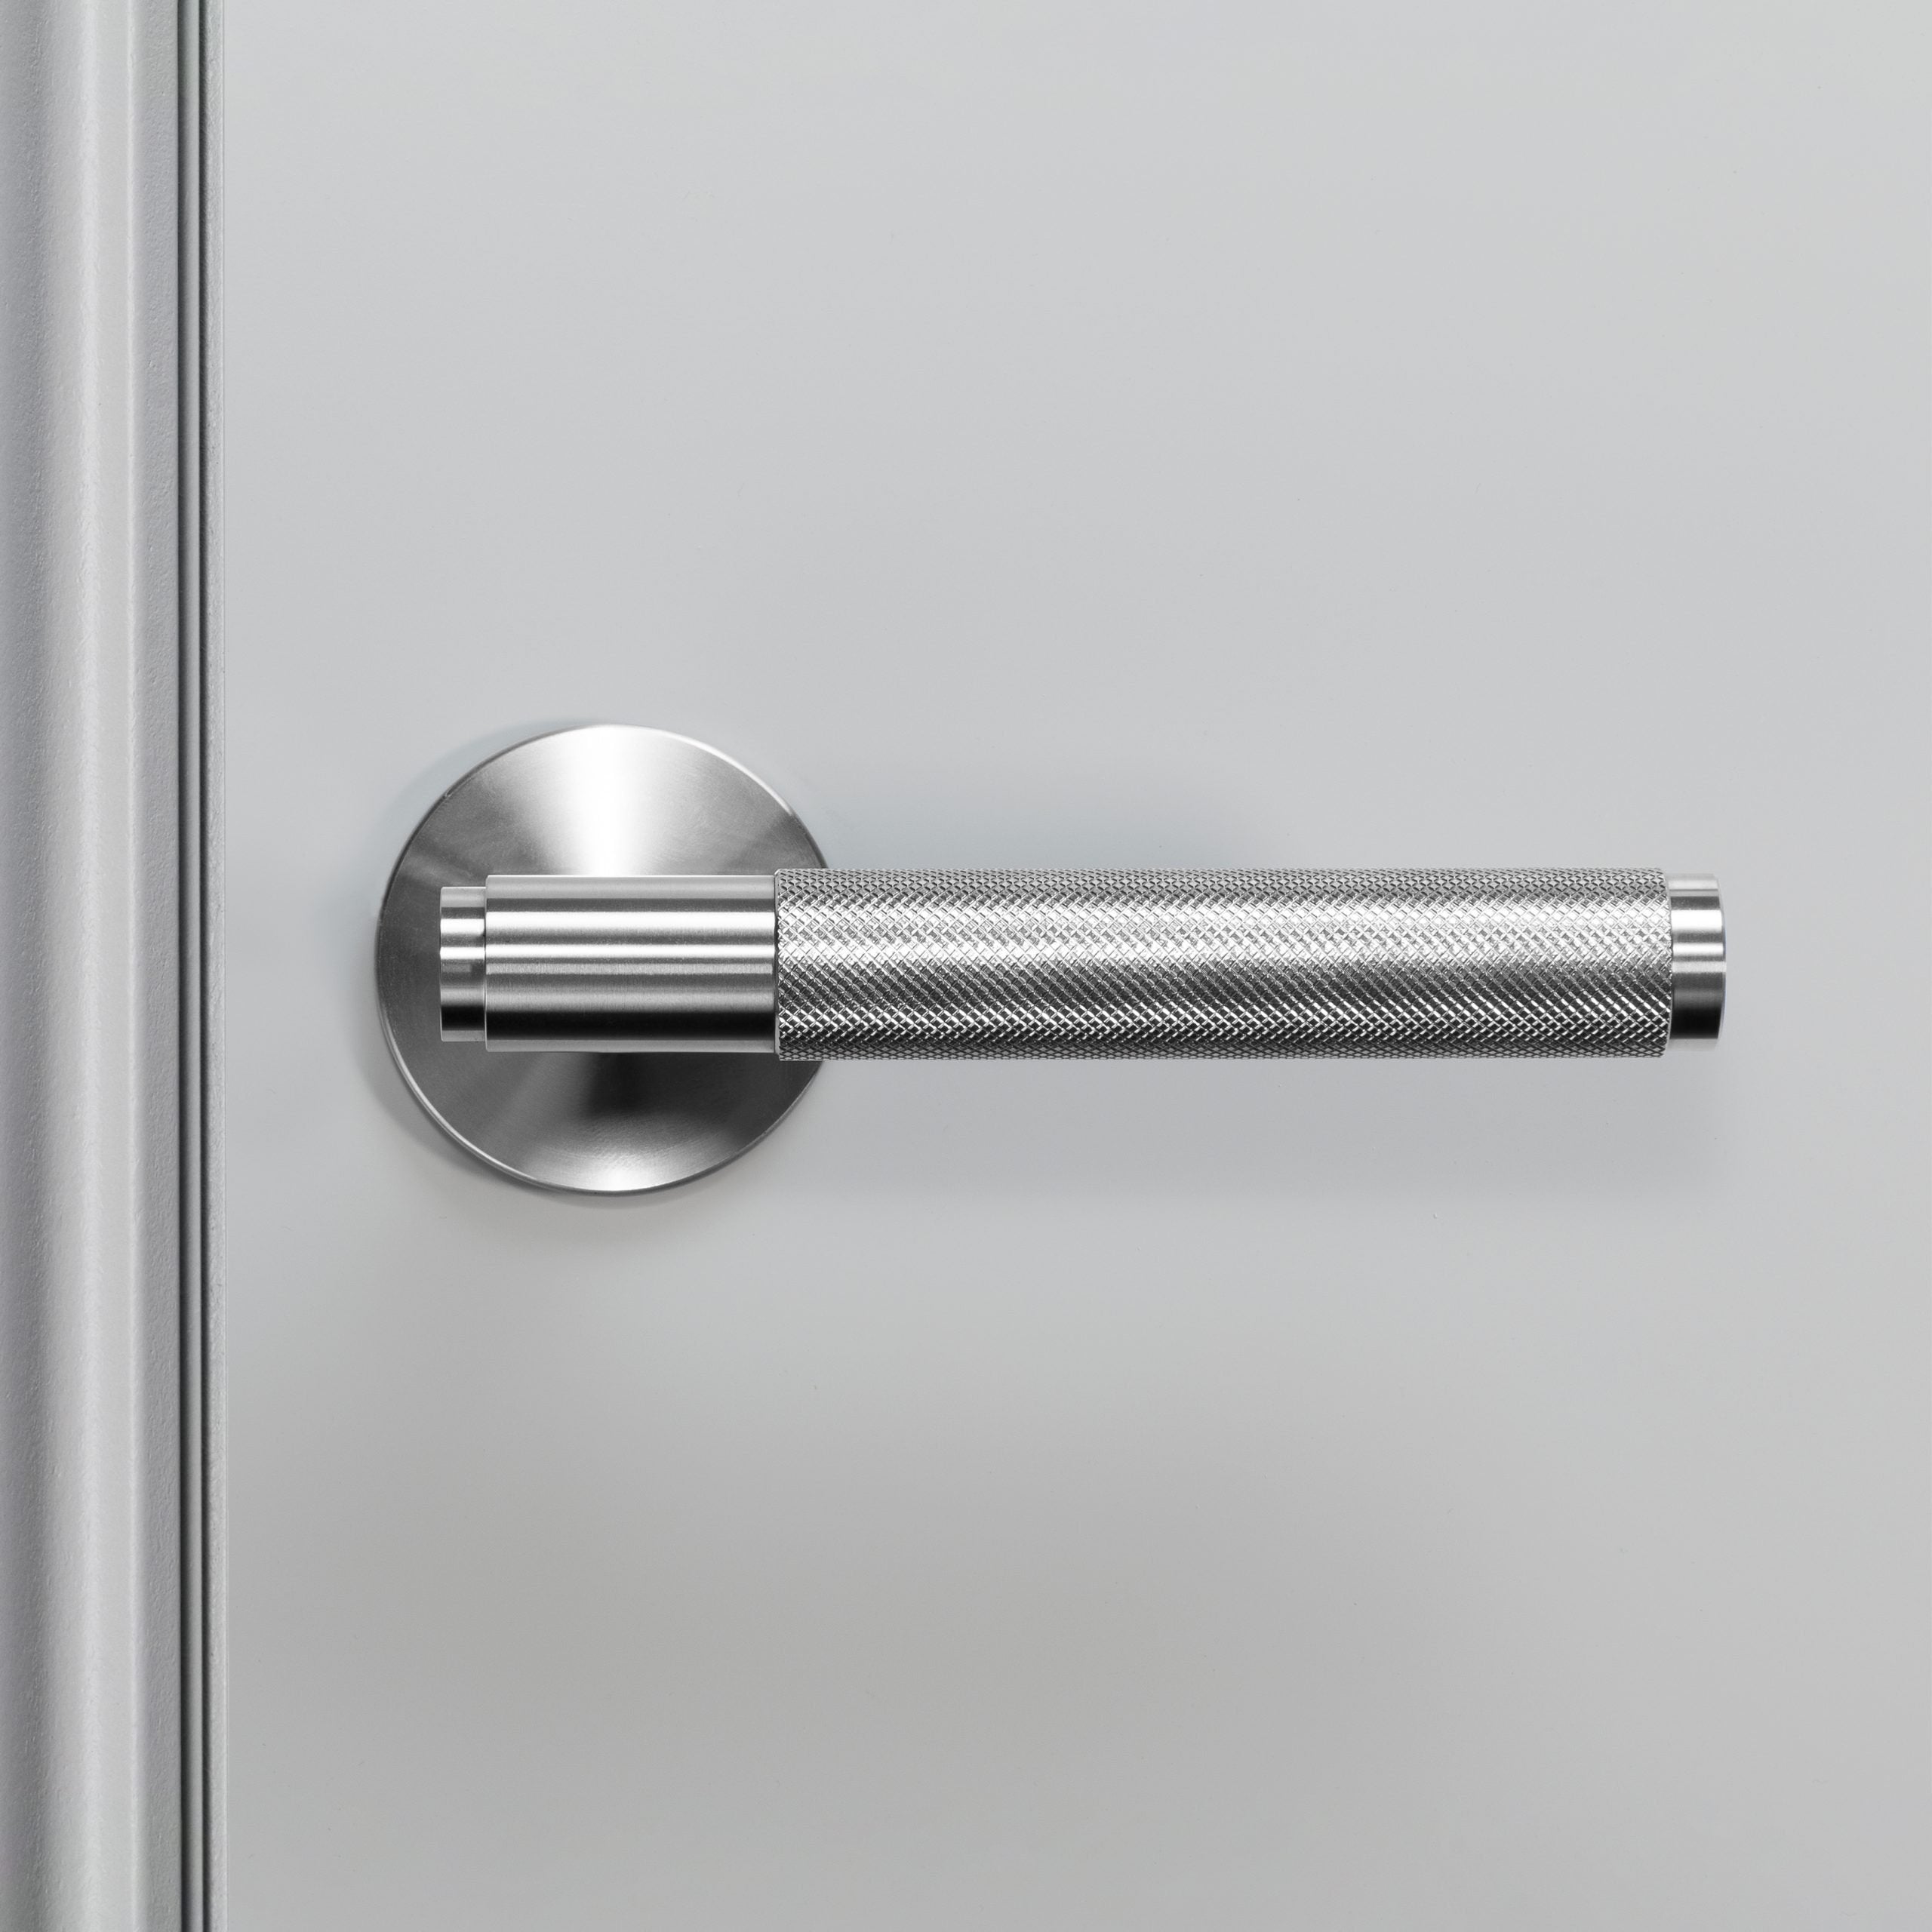 Buster + Punch Conventional Door Handle, Cross Design - FIXED TYPE